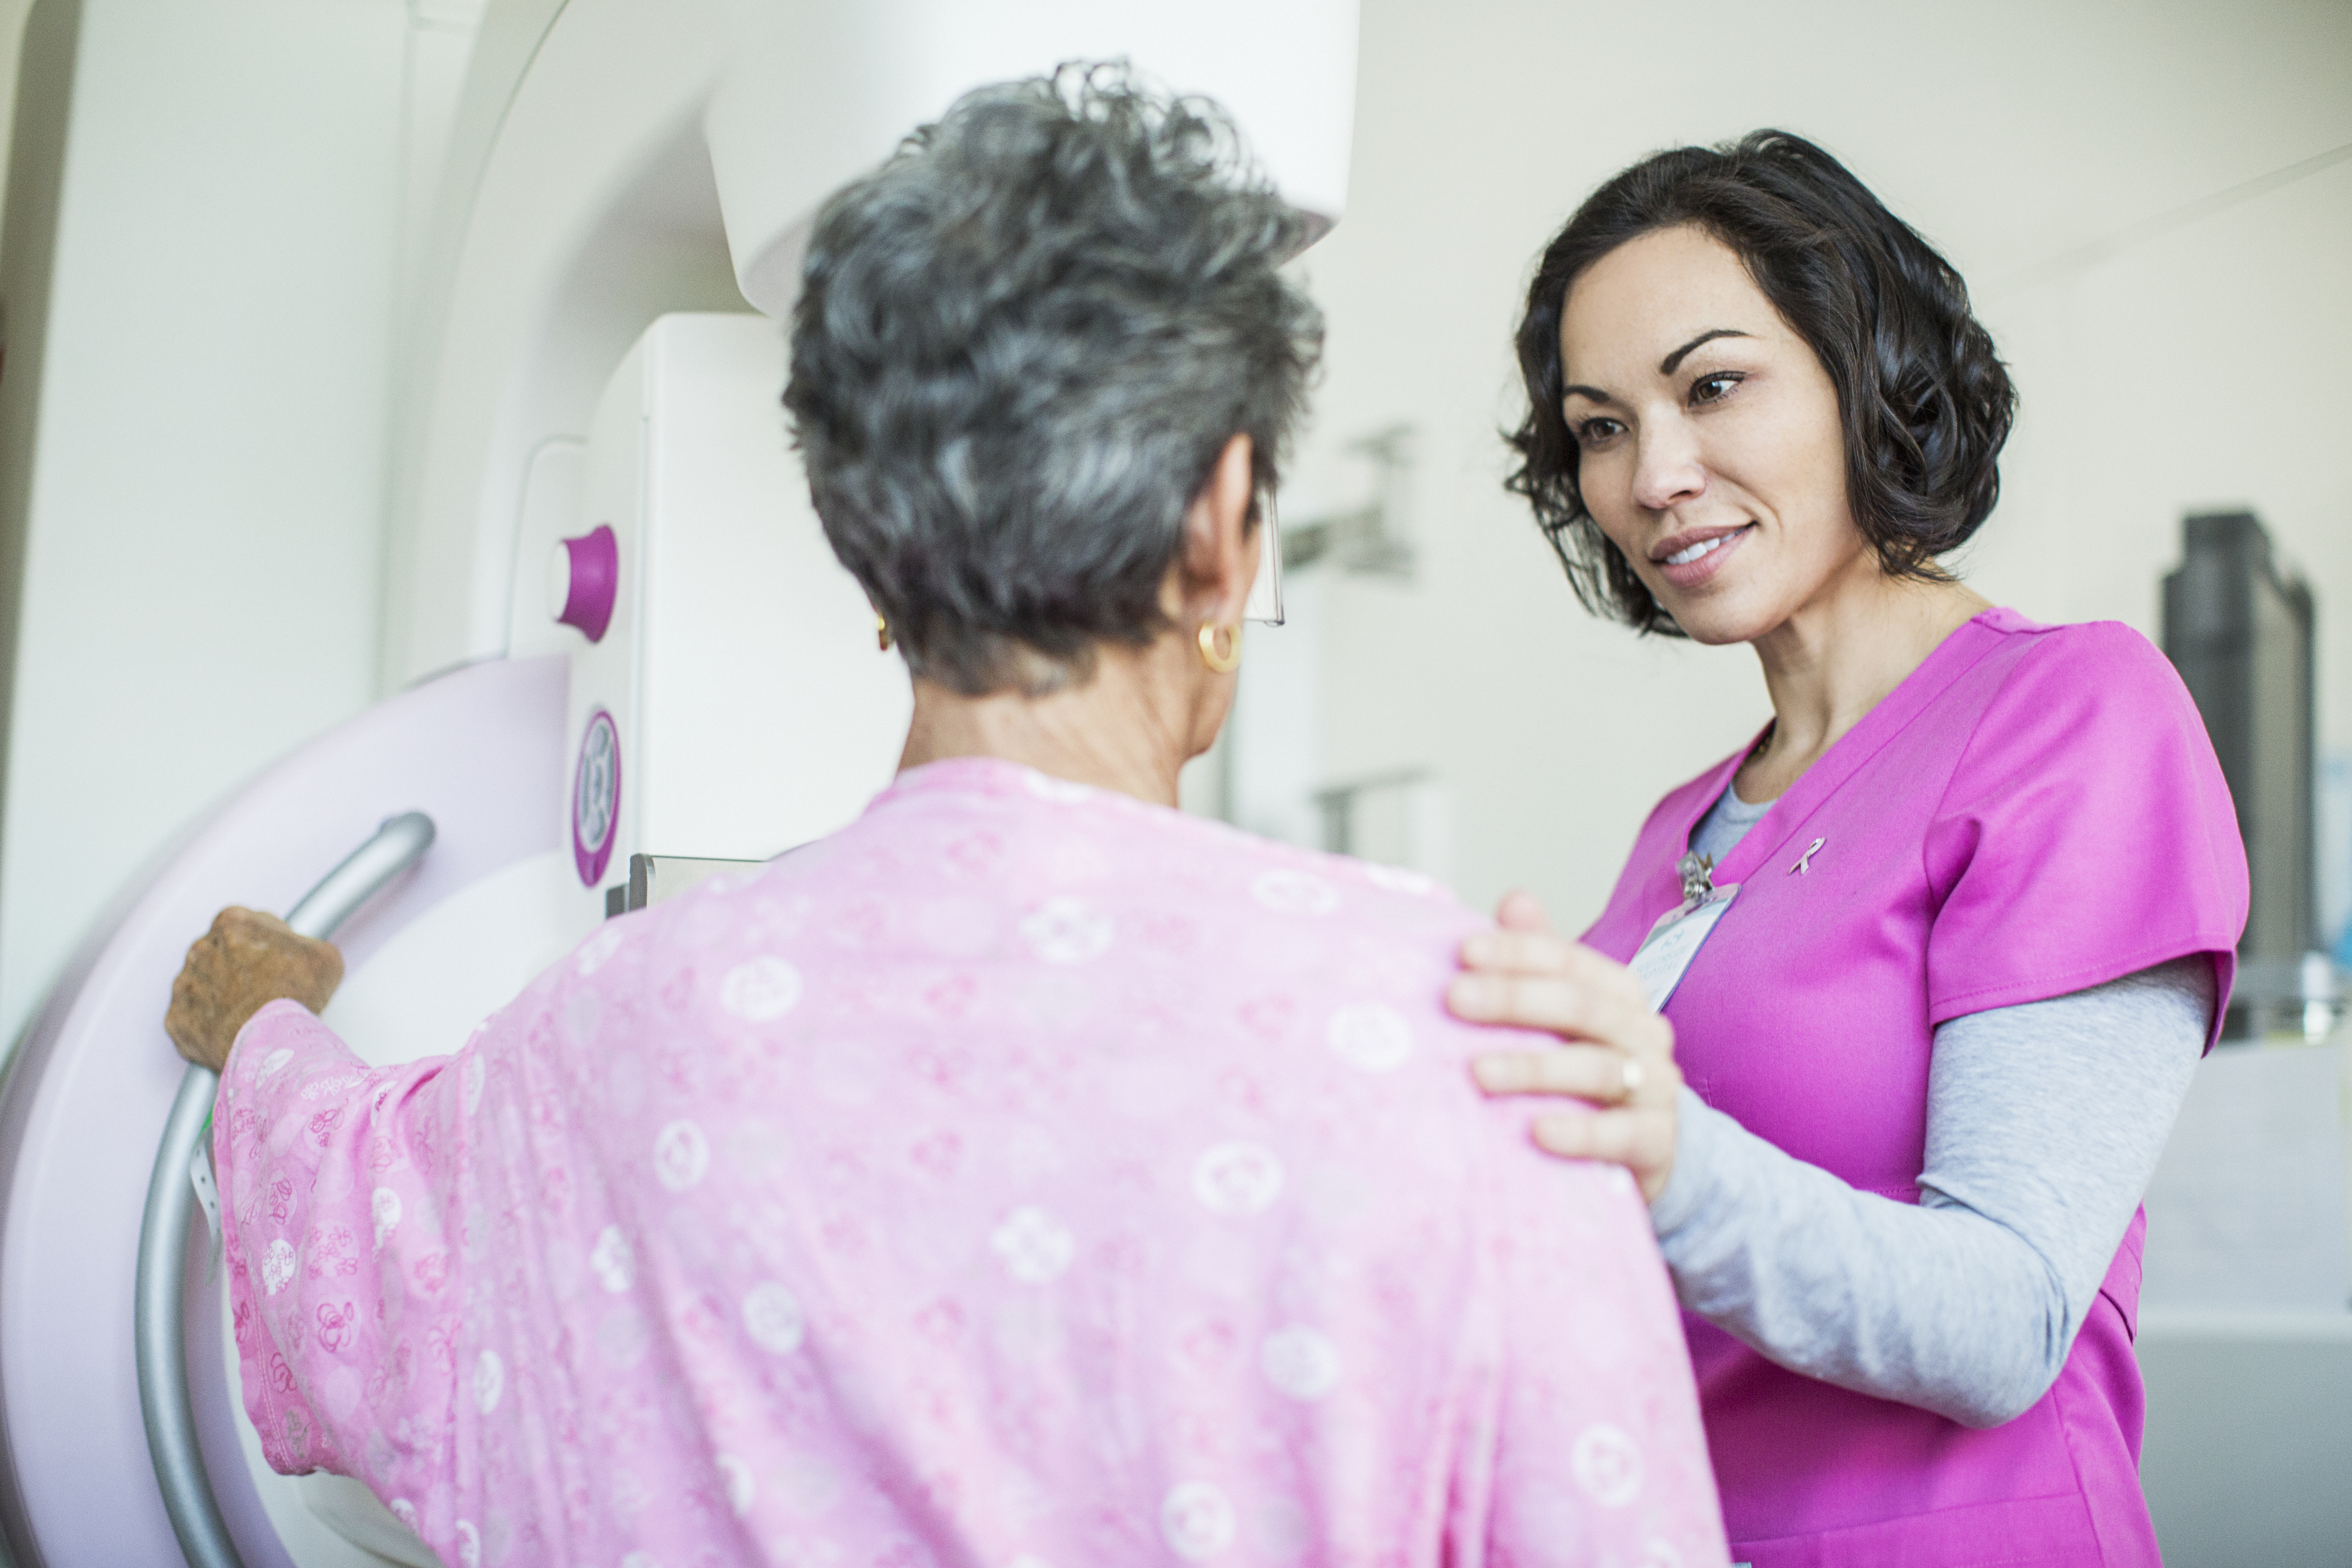 The Medical Center of Aurora and Centennial Hospital offer convenient mammogram scheduling